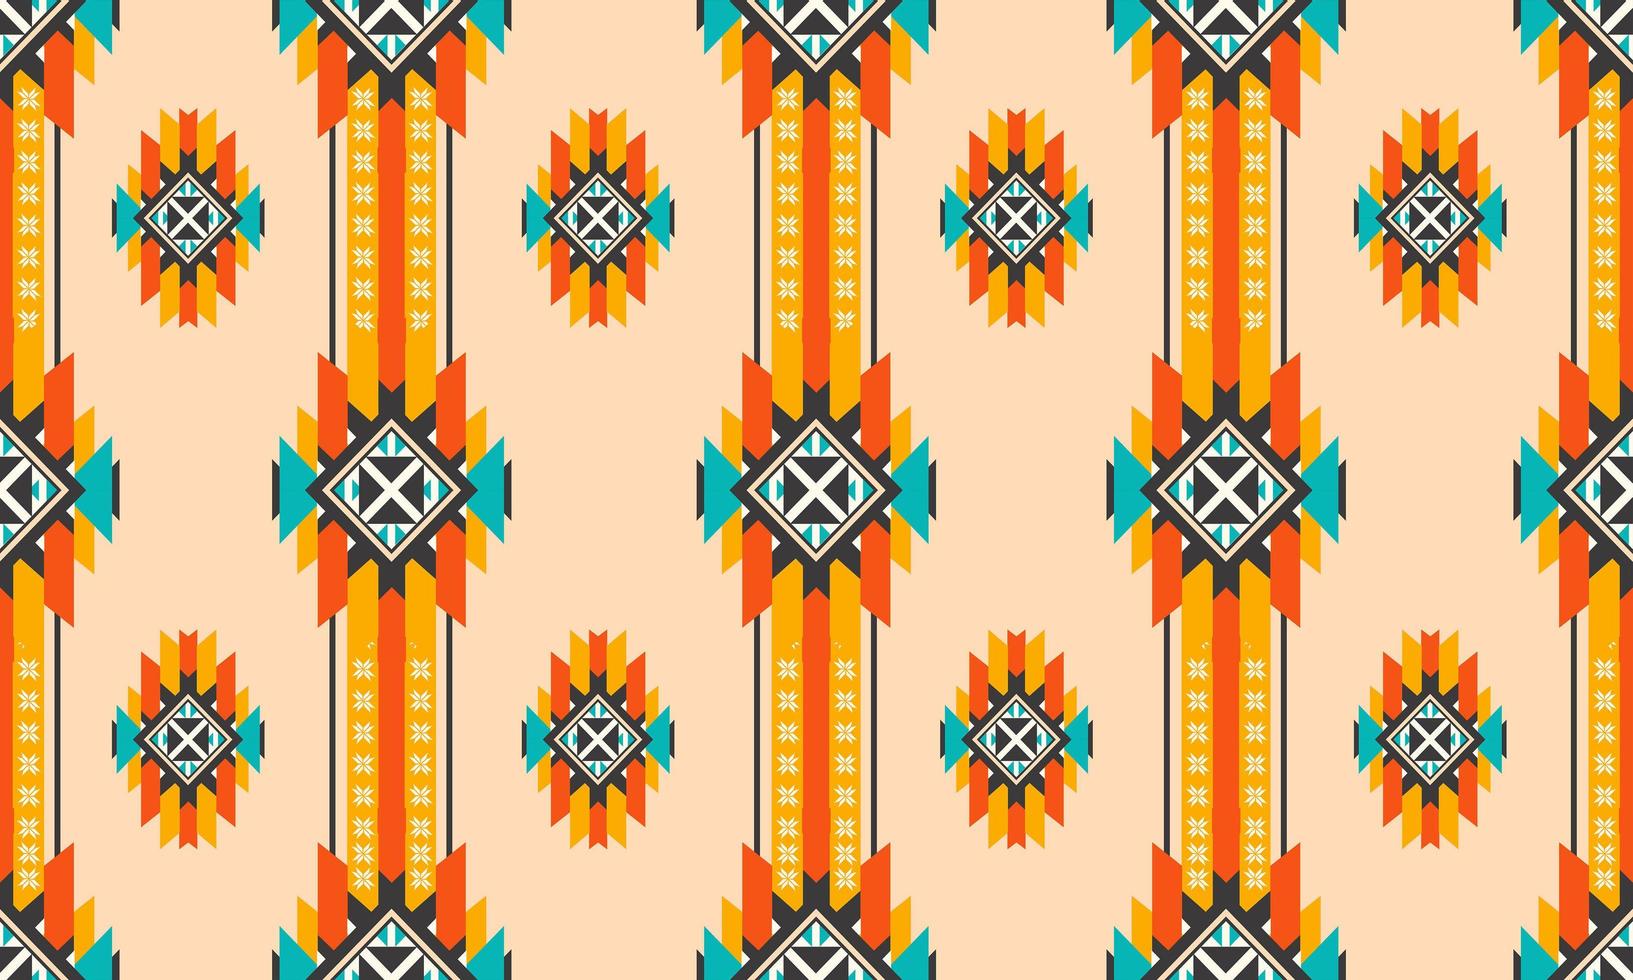 Diseño de fondo tradicional de vector de patrones sin fisuras étnicas orientales para alfombra, papel tapiz, ropa, envoltura, batik, tela, estilo de bordado de ilustración vectorial.